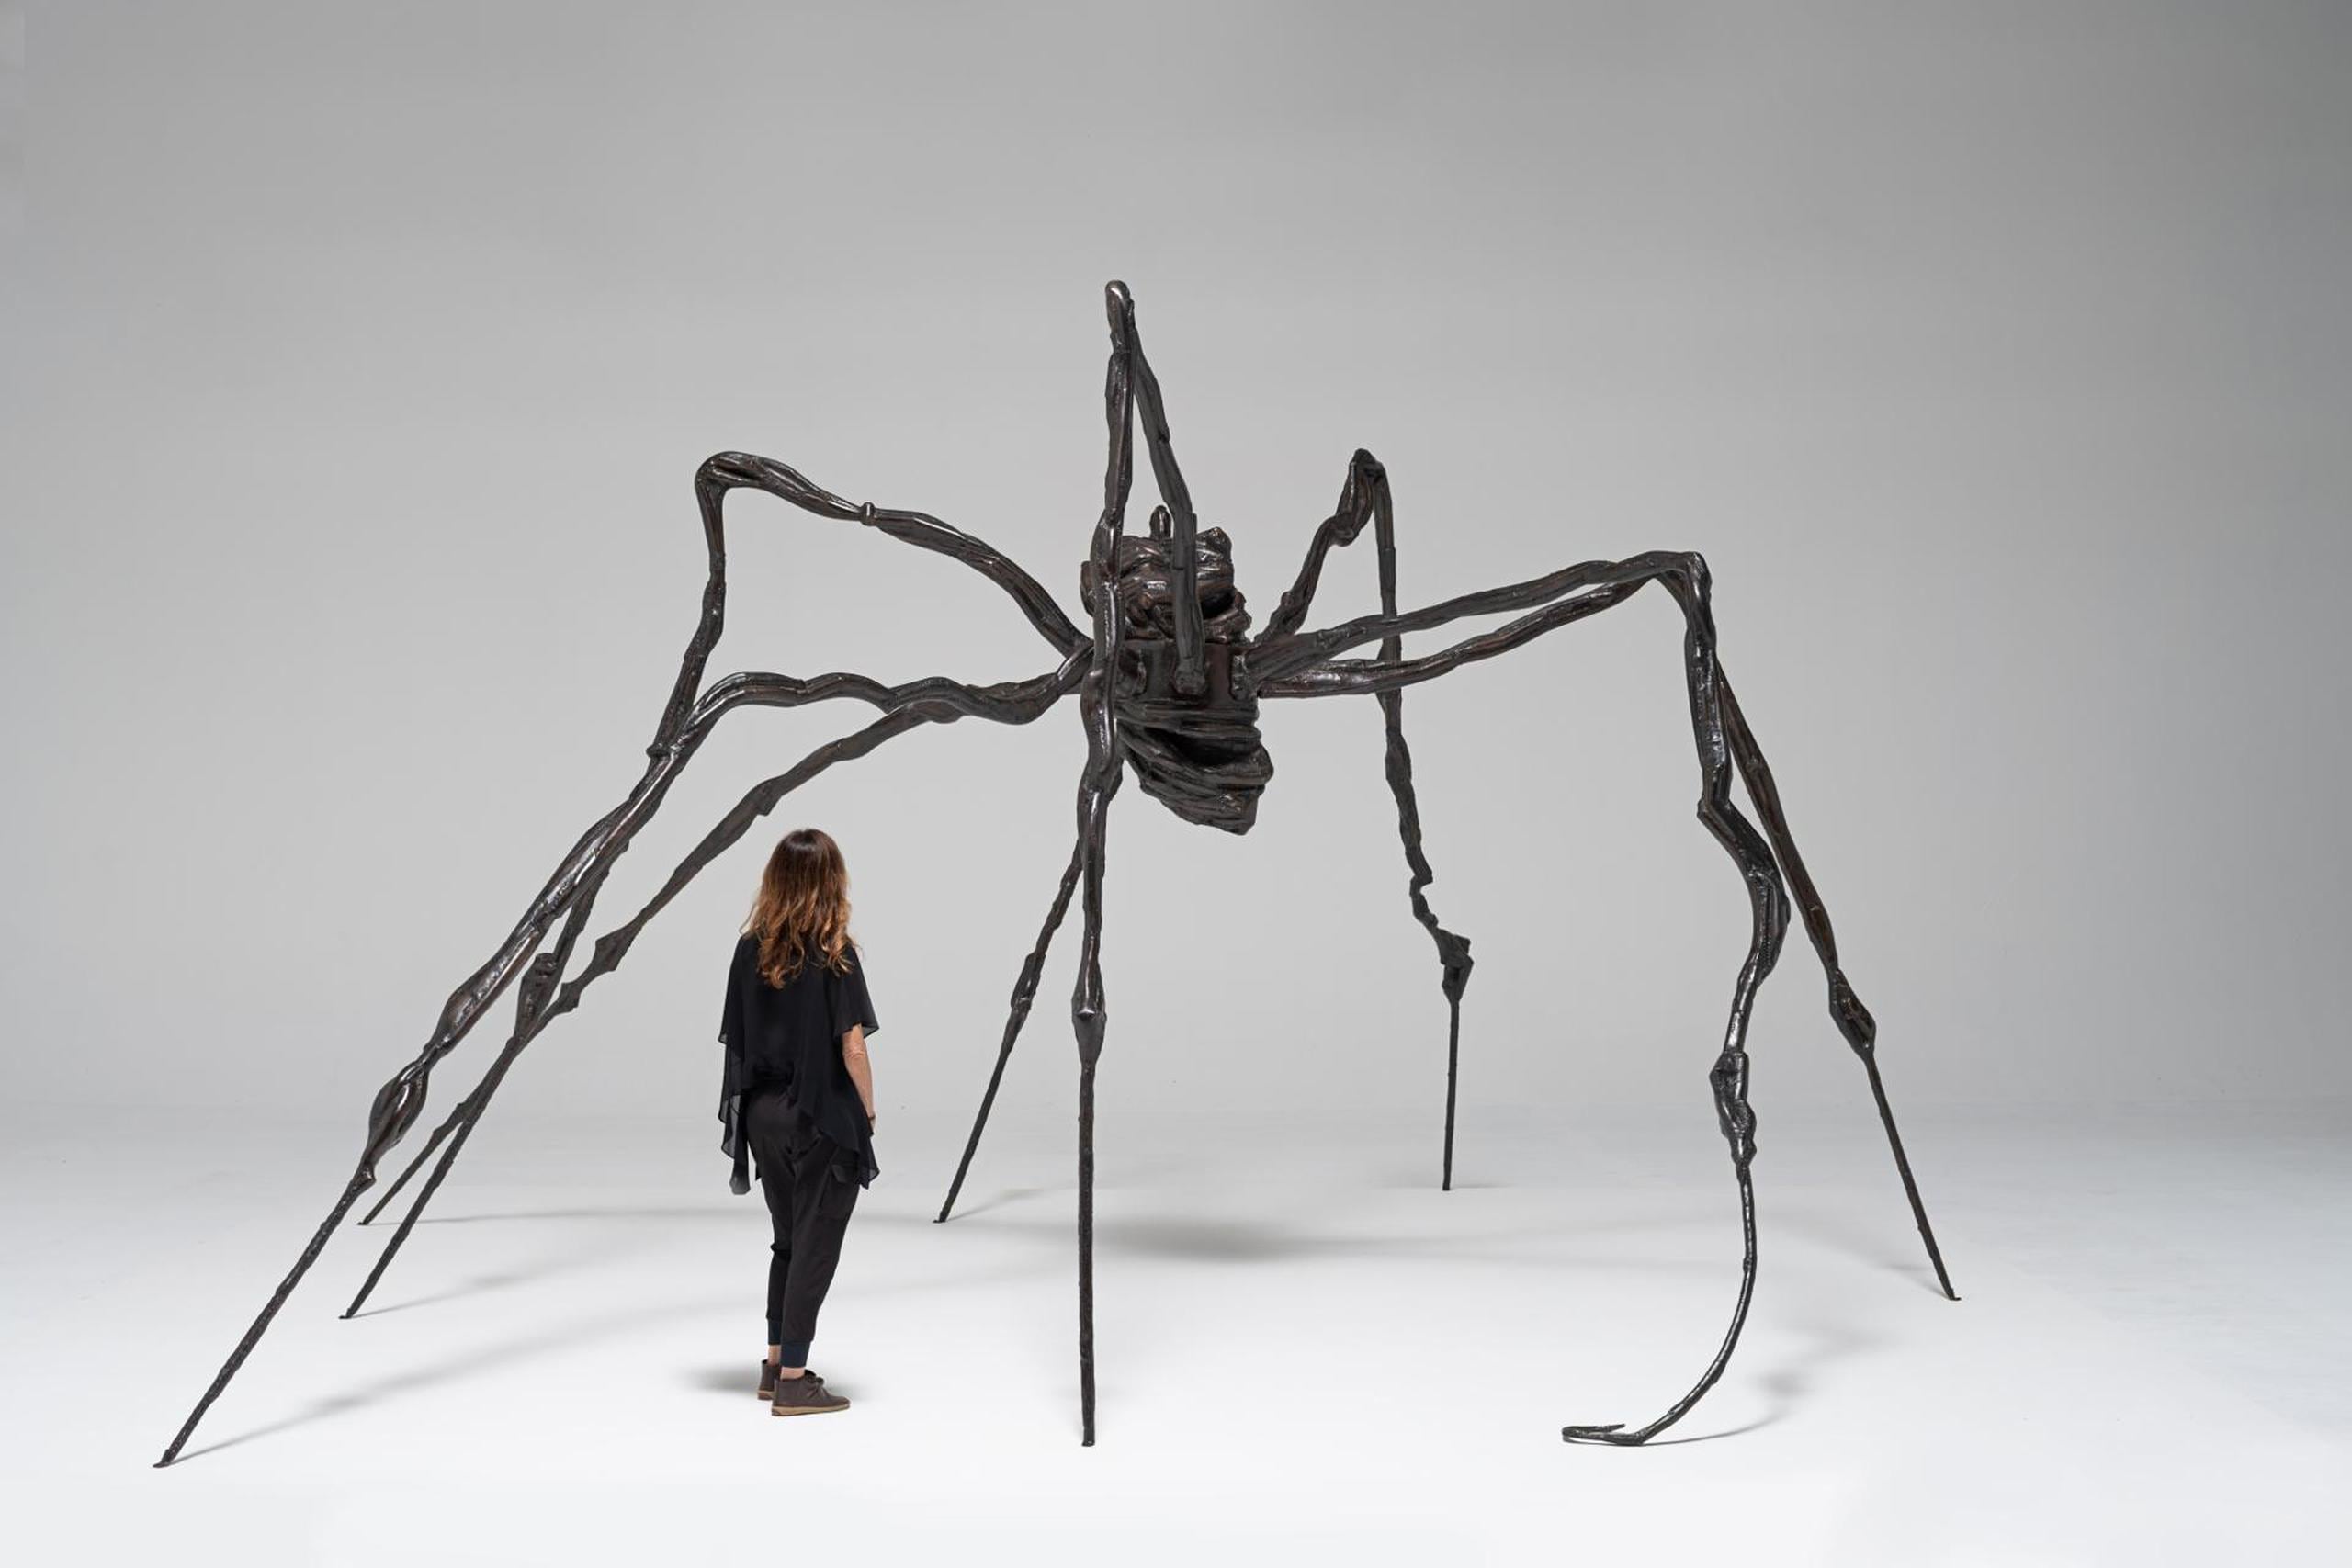 Fotografía cedida por Sotheby's donde se muestra la obra "Spider" de la artista francoestadounidense Louise Bourgeois, que se vendió por 32.8 millones de dólares en una subasta en Nueva York y se convirtió en su obra más cara.